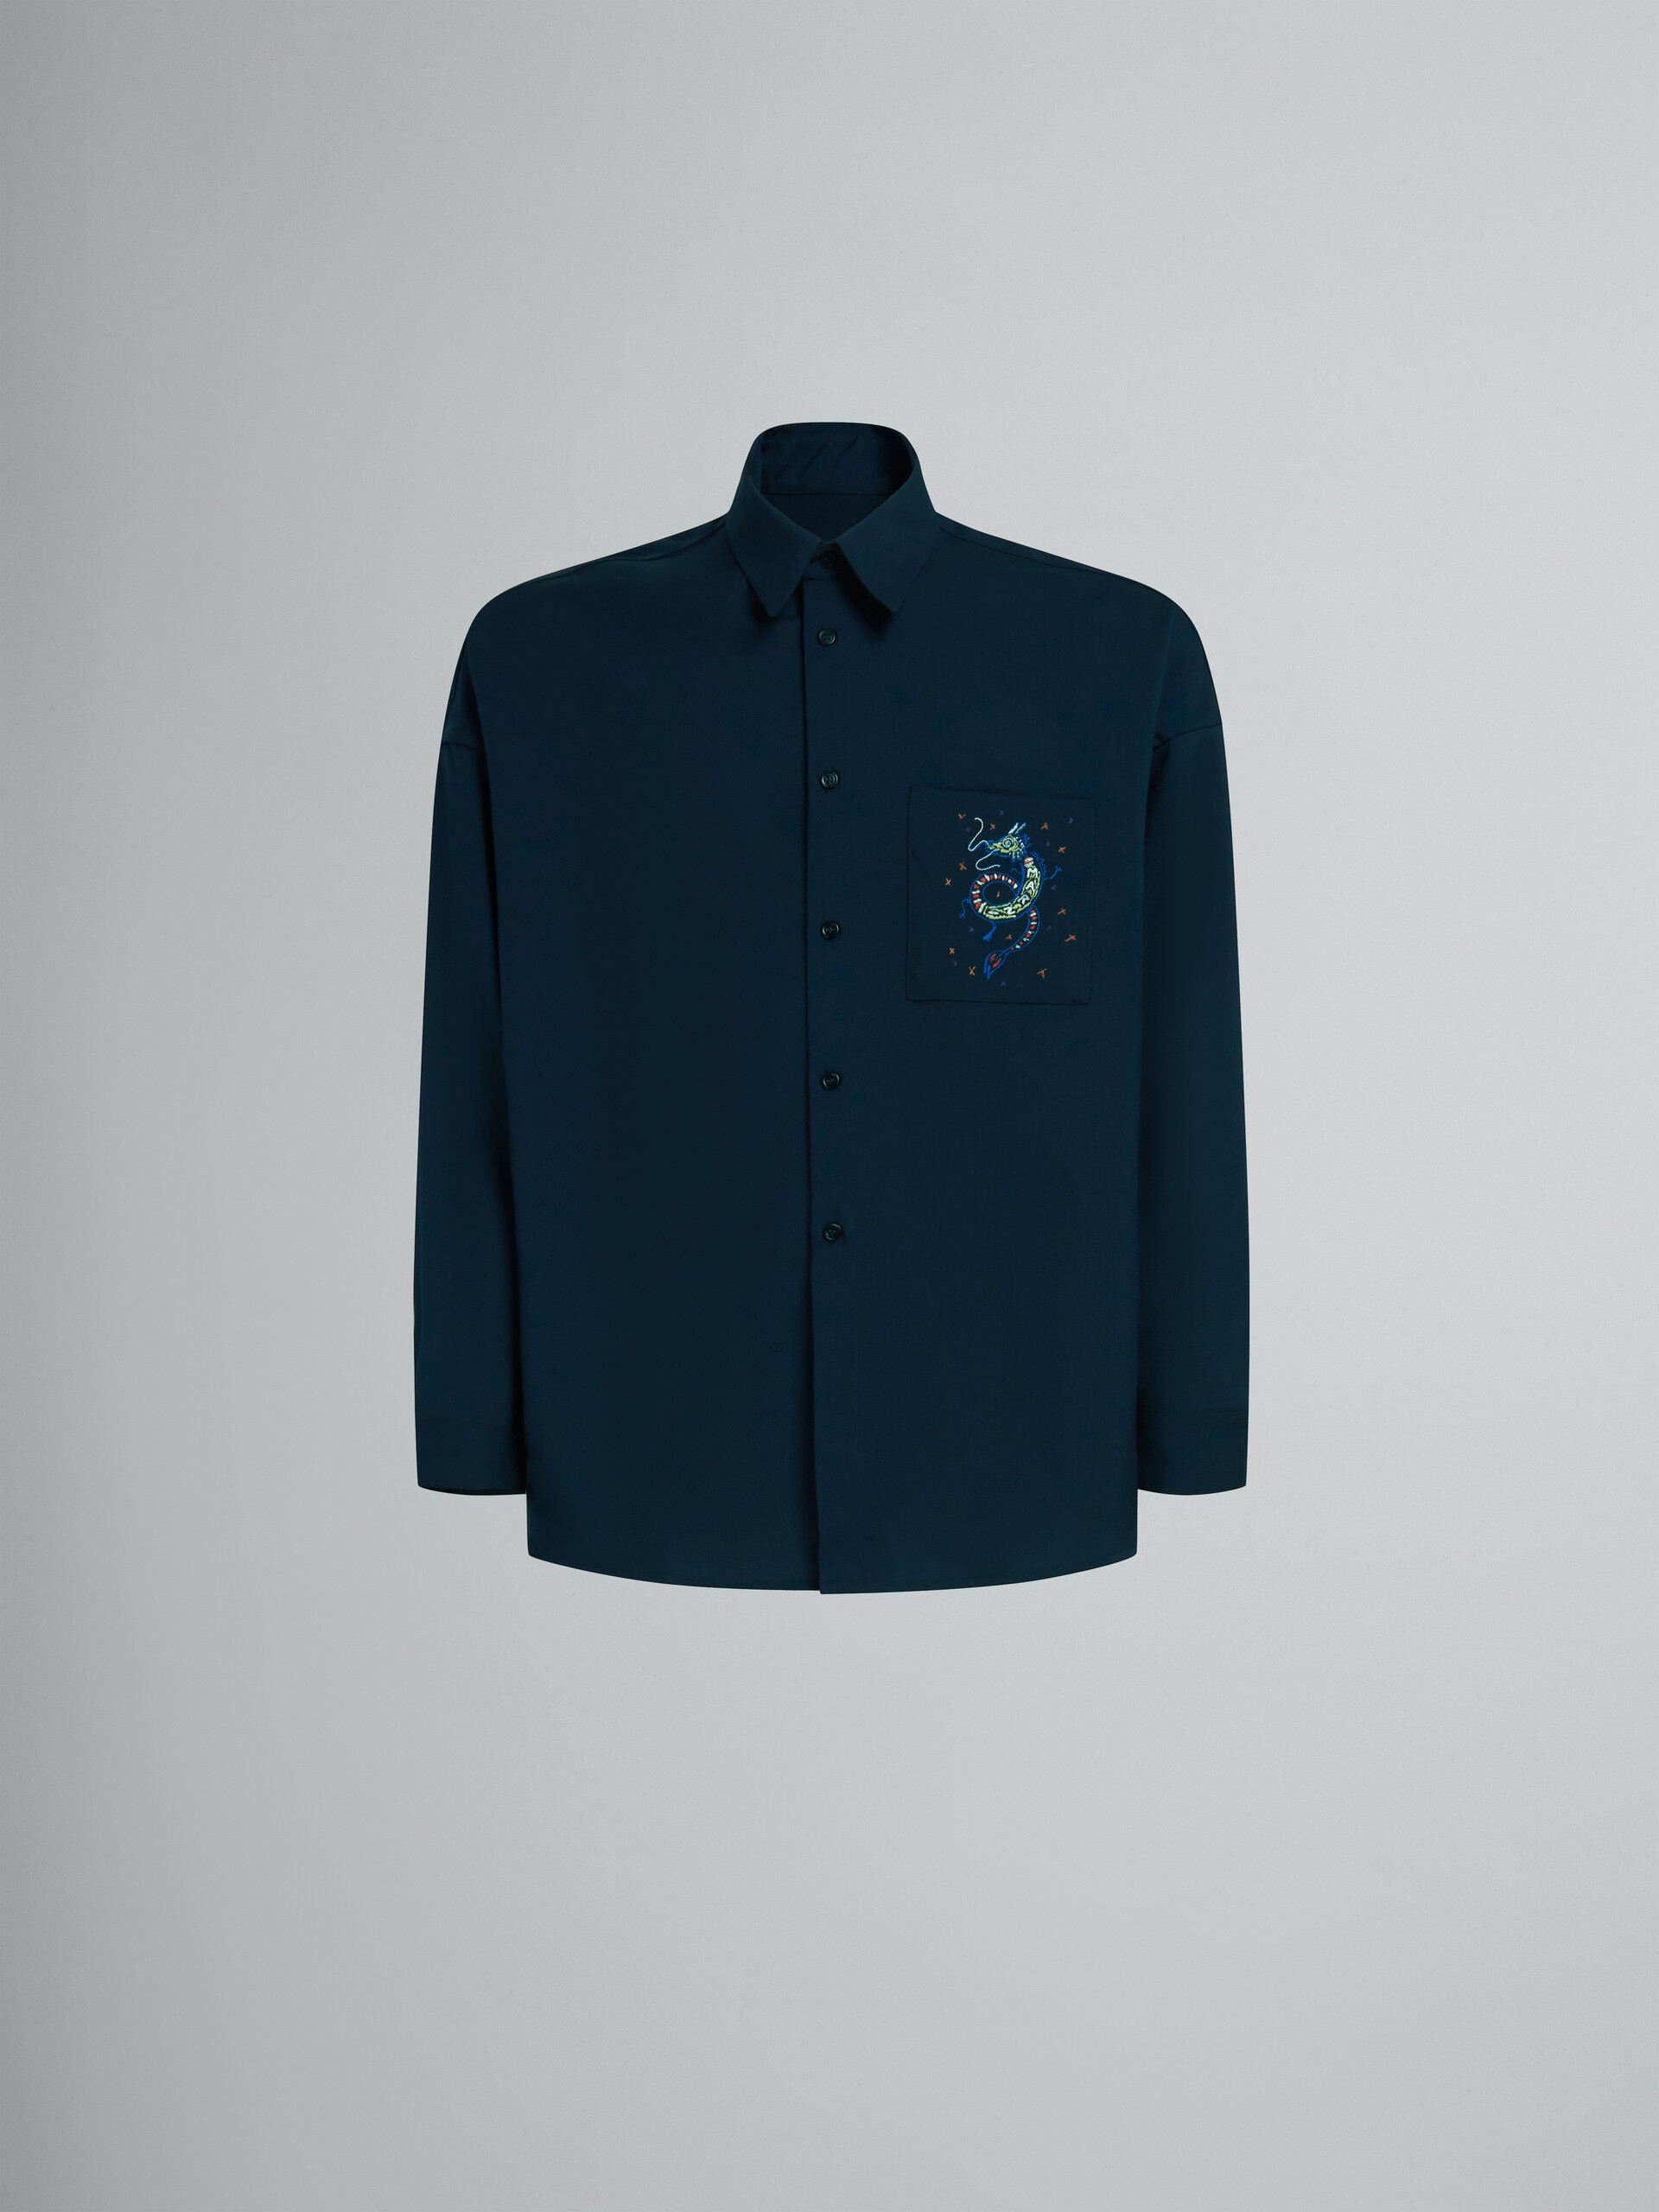 ディープブルー ウール製シャツ、ドラゴンの刺しゅう入り - シャツ - Image 1